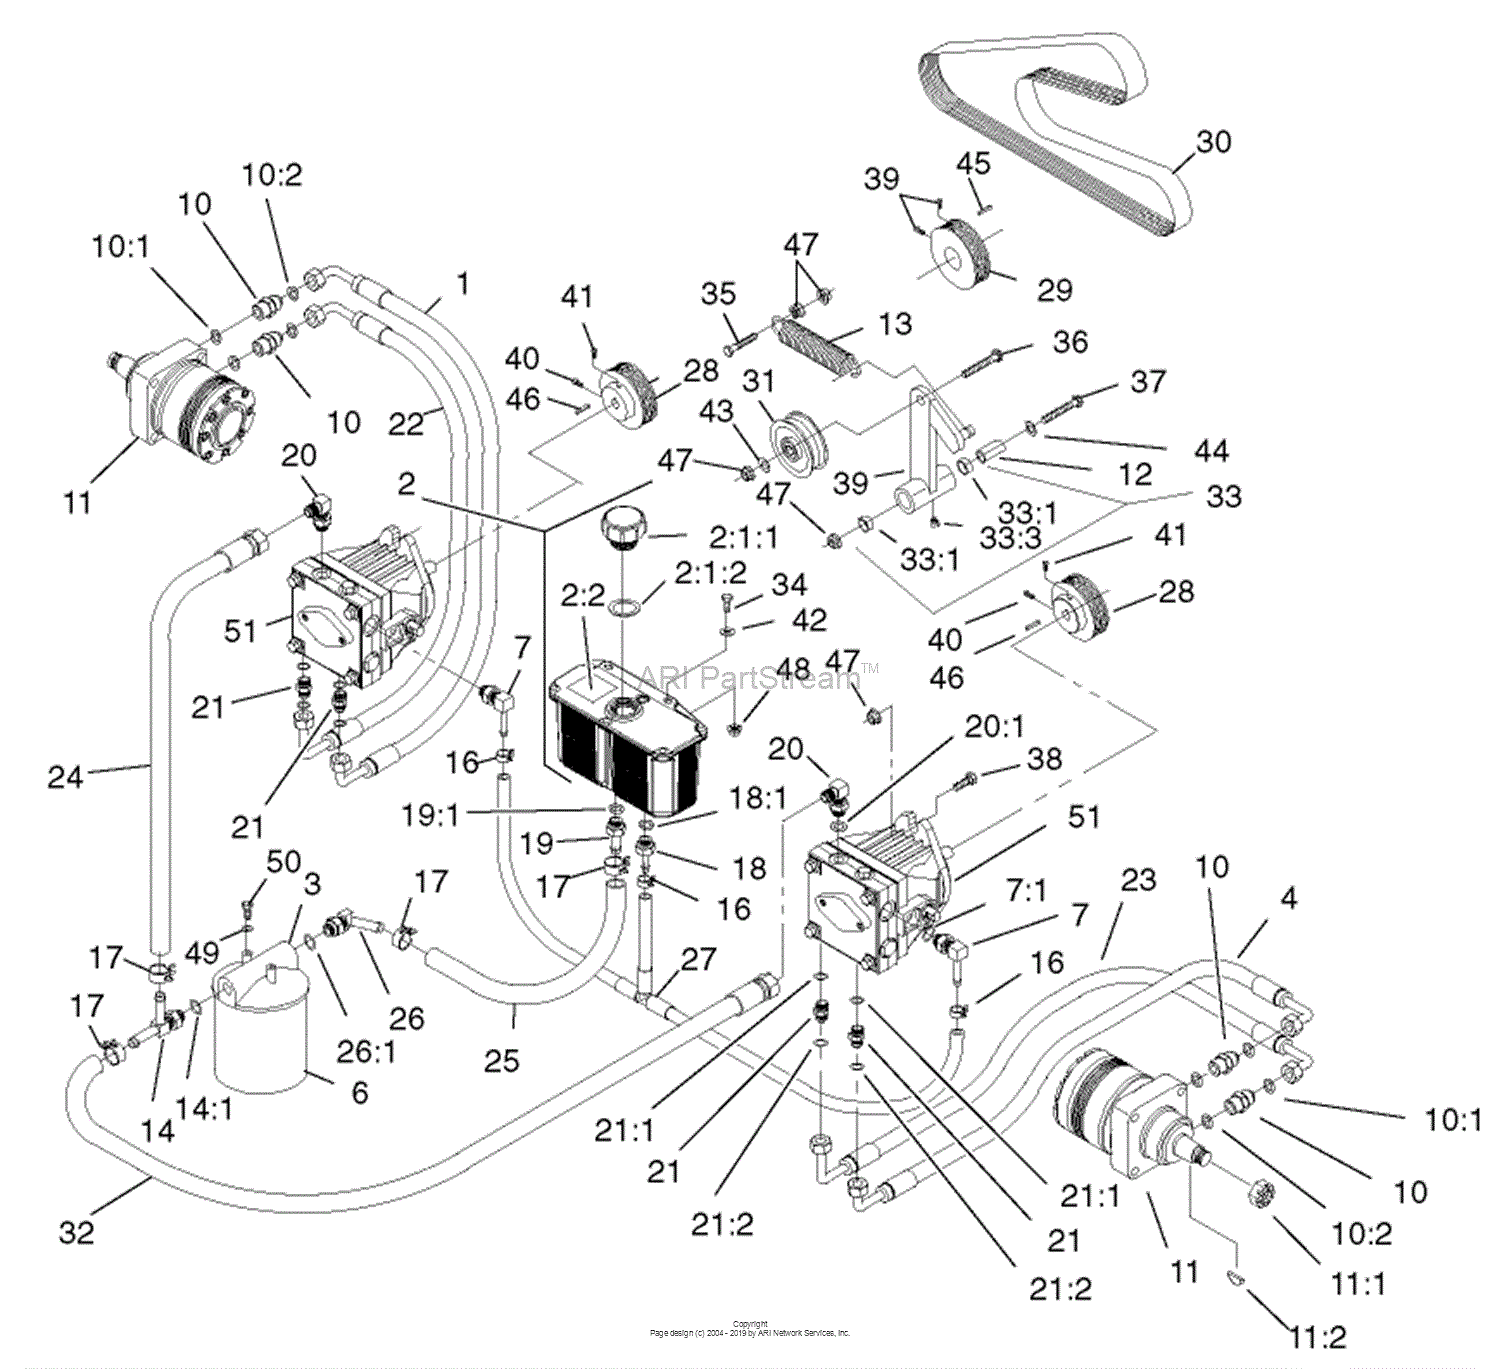 74228 wiring diagram